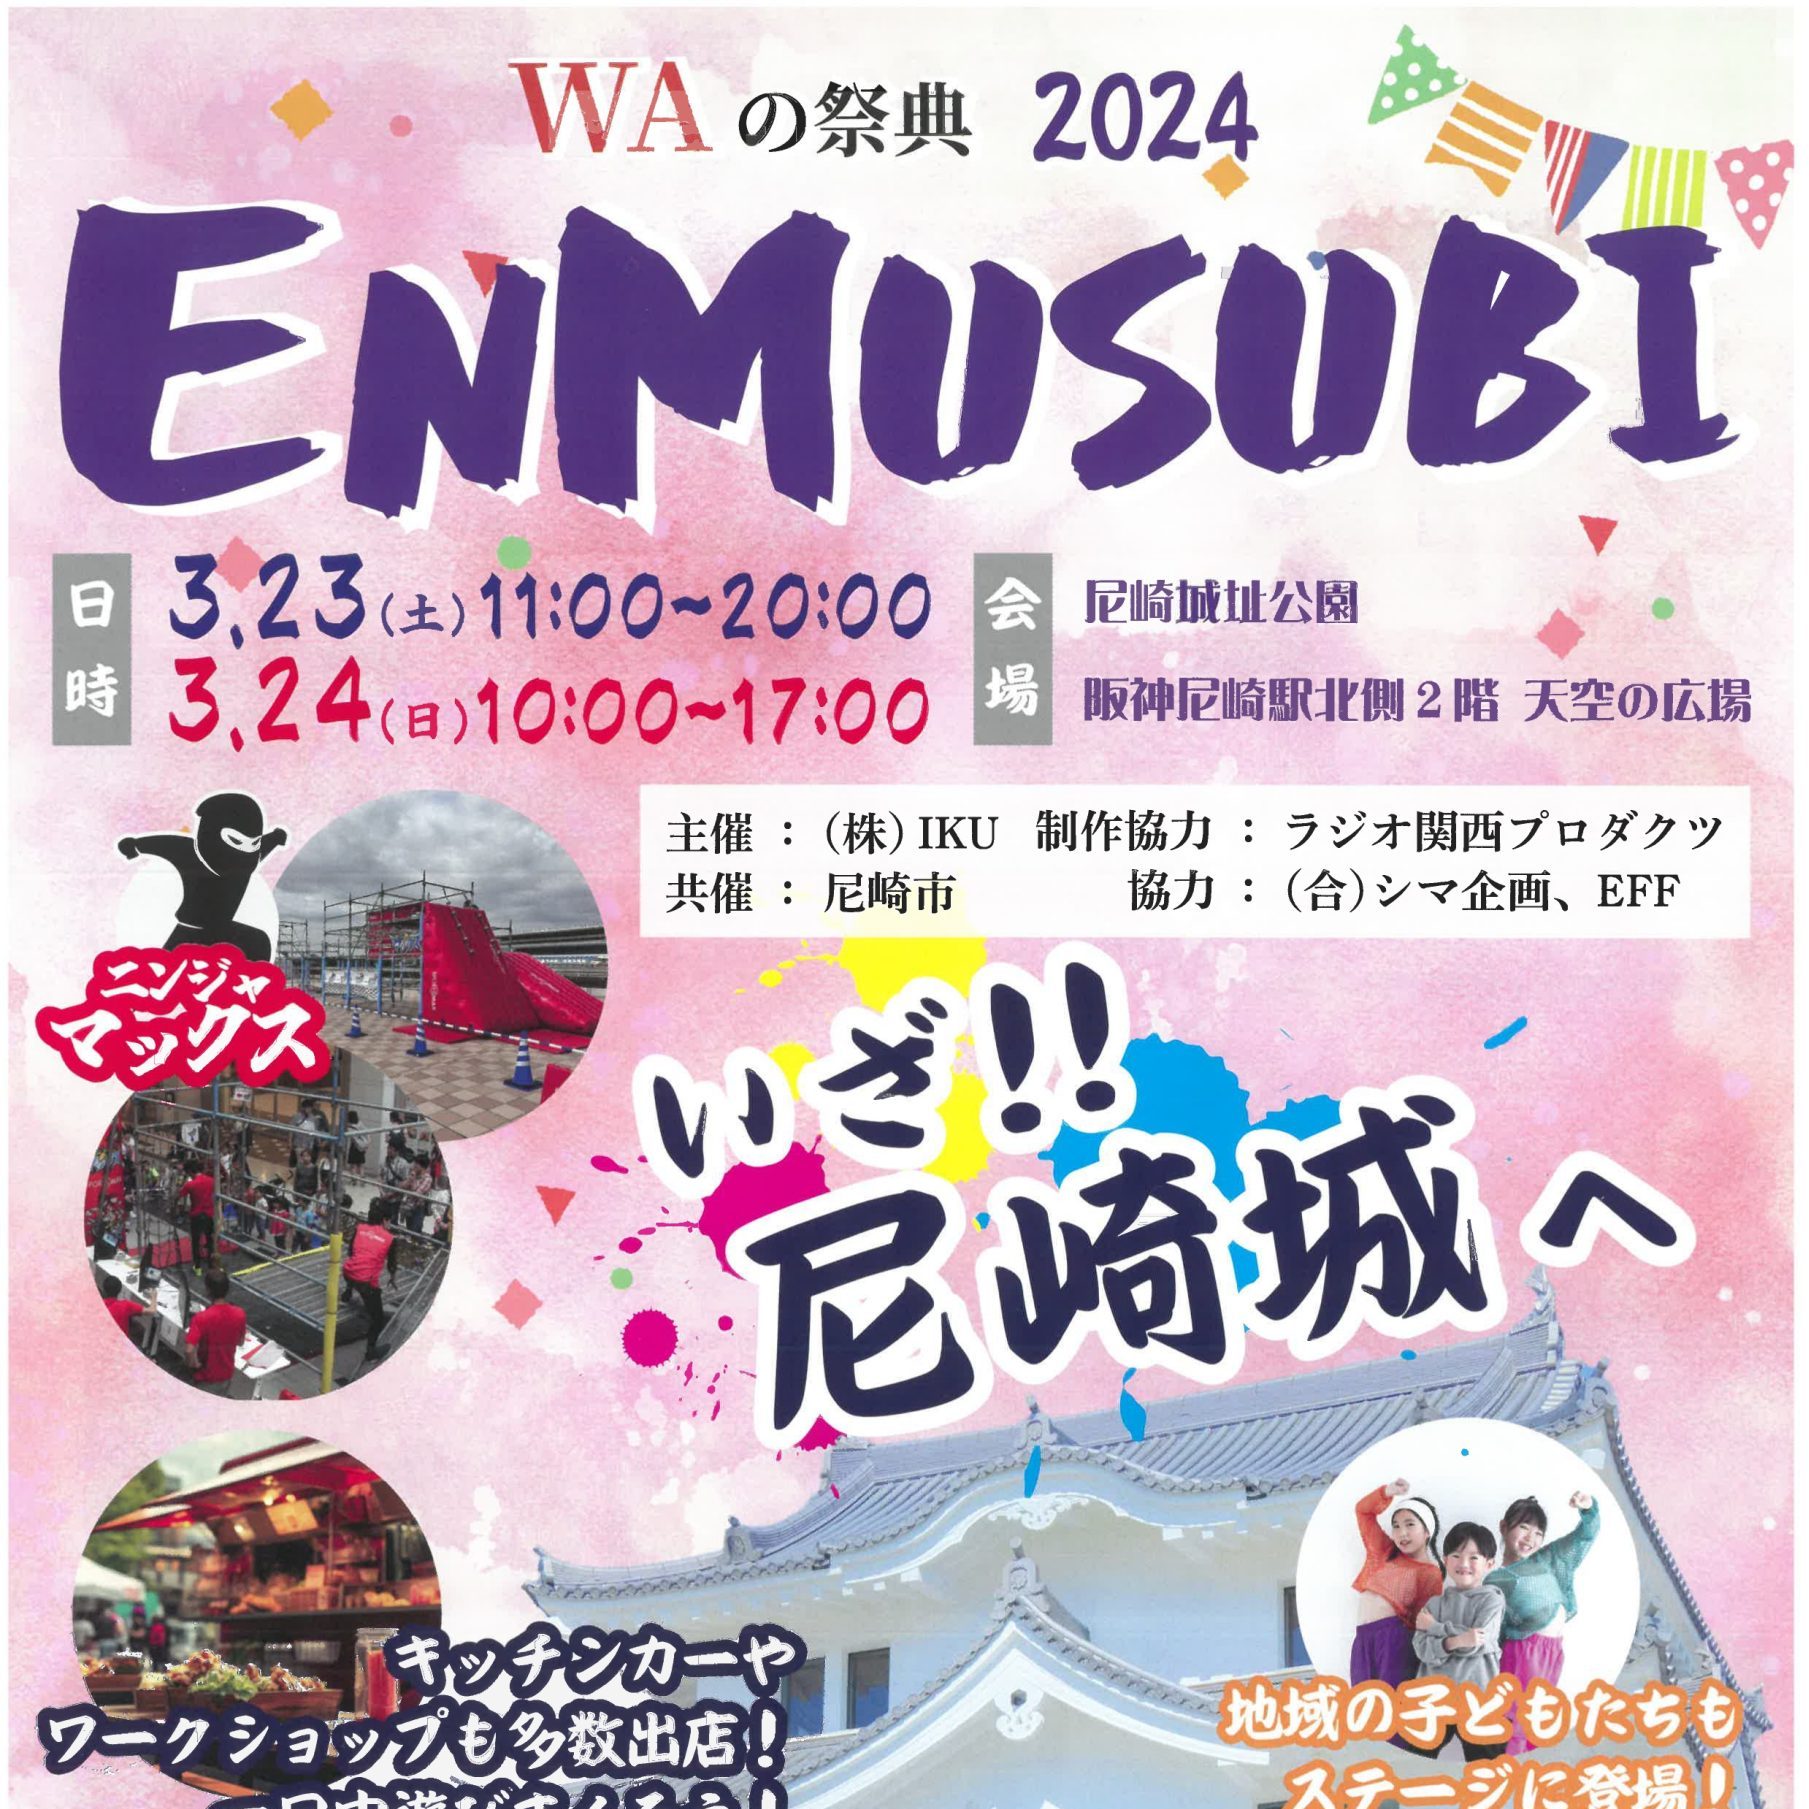 【終了しました】WAの祭典 ENMUSUBI 2024